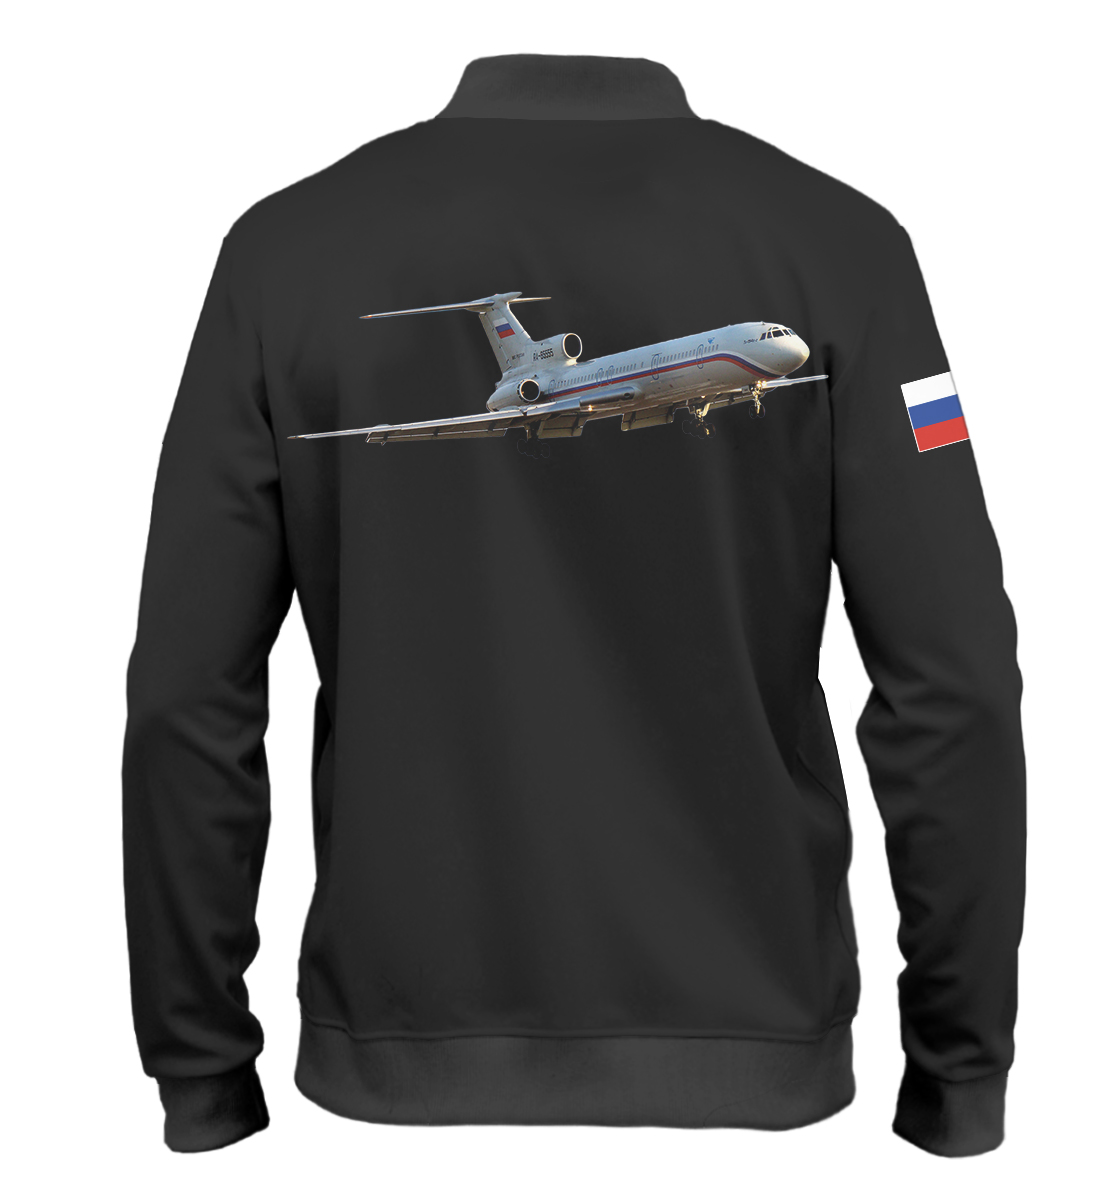 Мужской бомбер с принтом Ту-154Б-2  - фото 2-спина